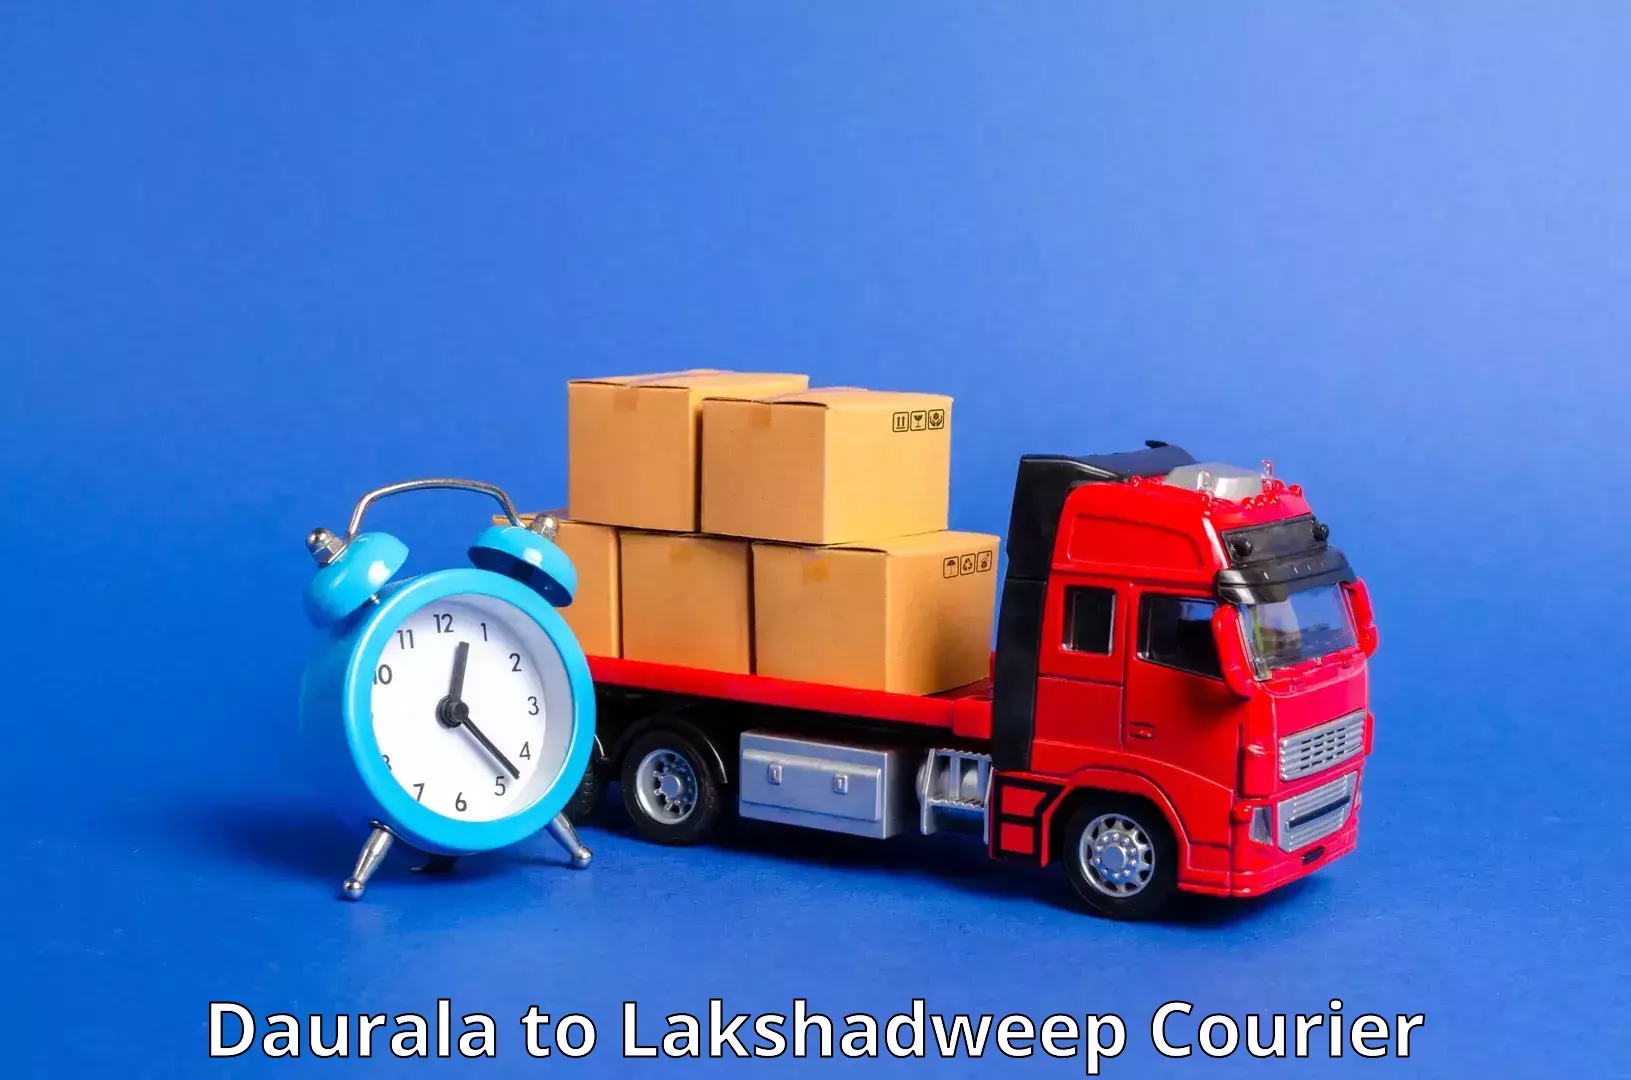 Advanced courier platforms Daurala to Lakshadweep